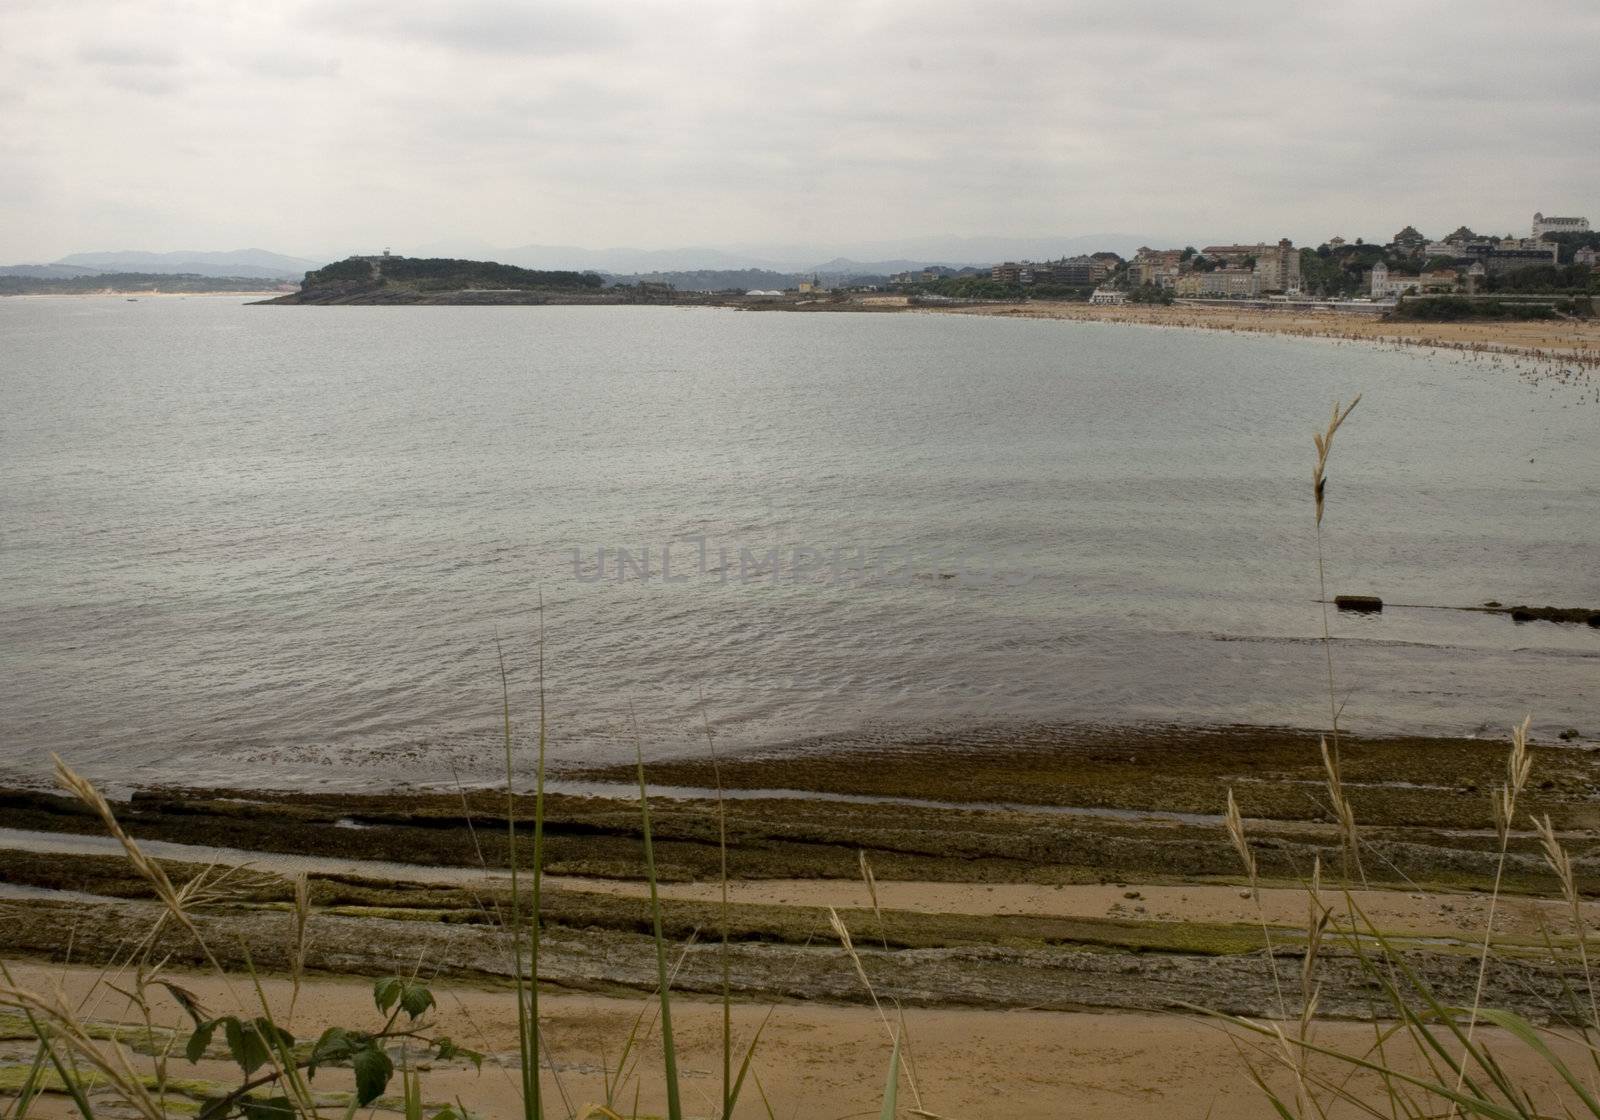 View of Santander beach, Cantabrian Sea